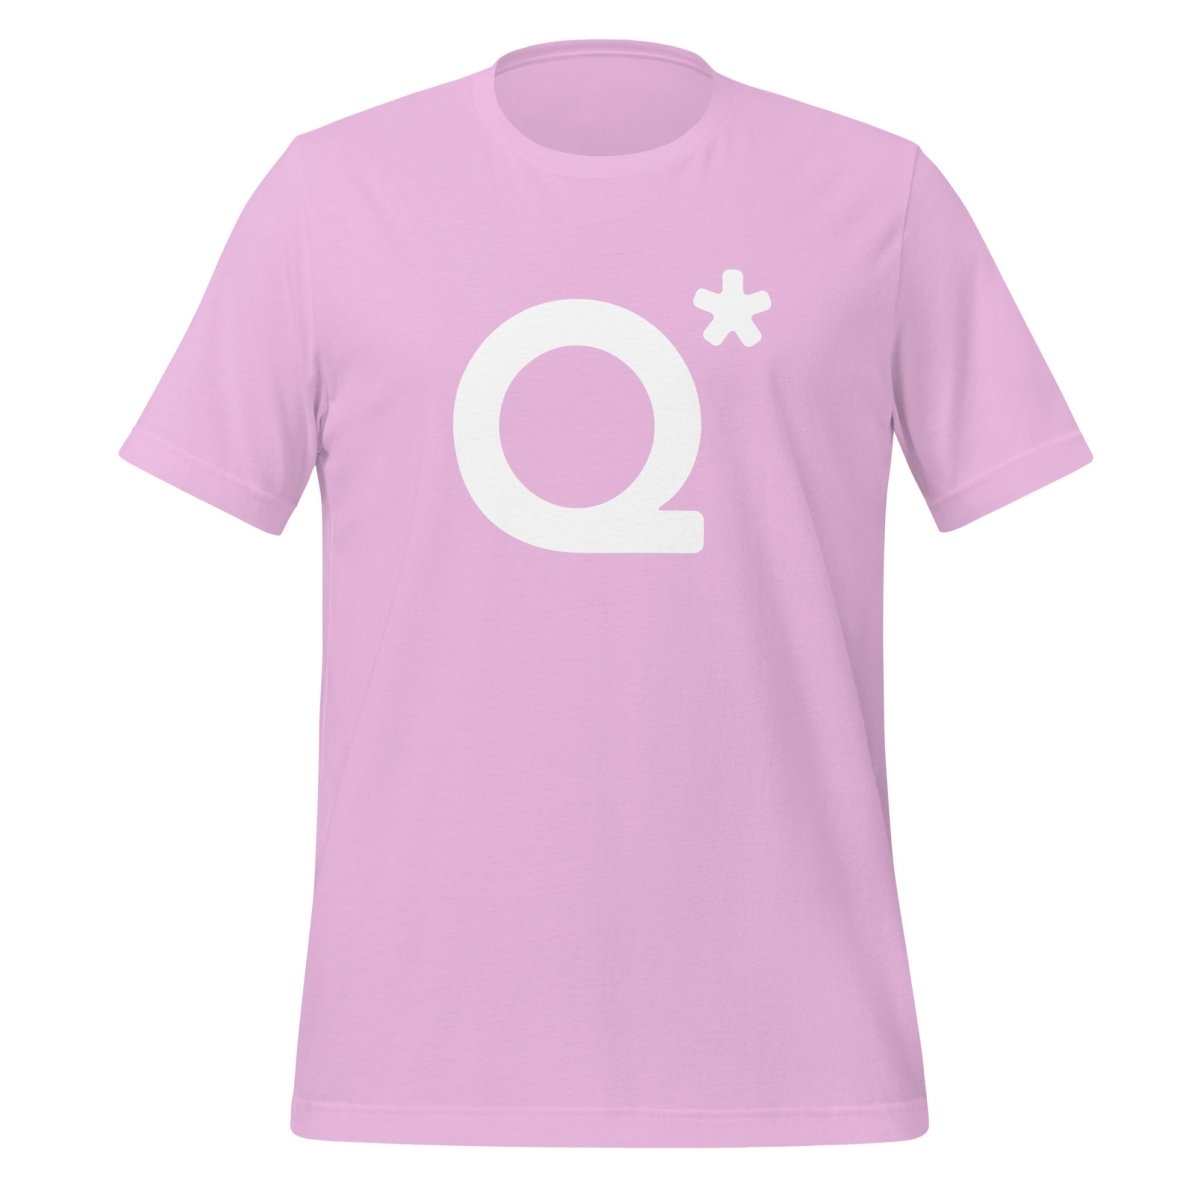 Q* (Q - Star) T - Shirt 1 (unisex) - Lilac - AI Store